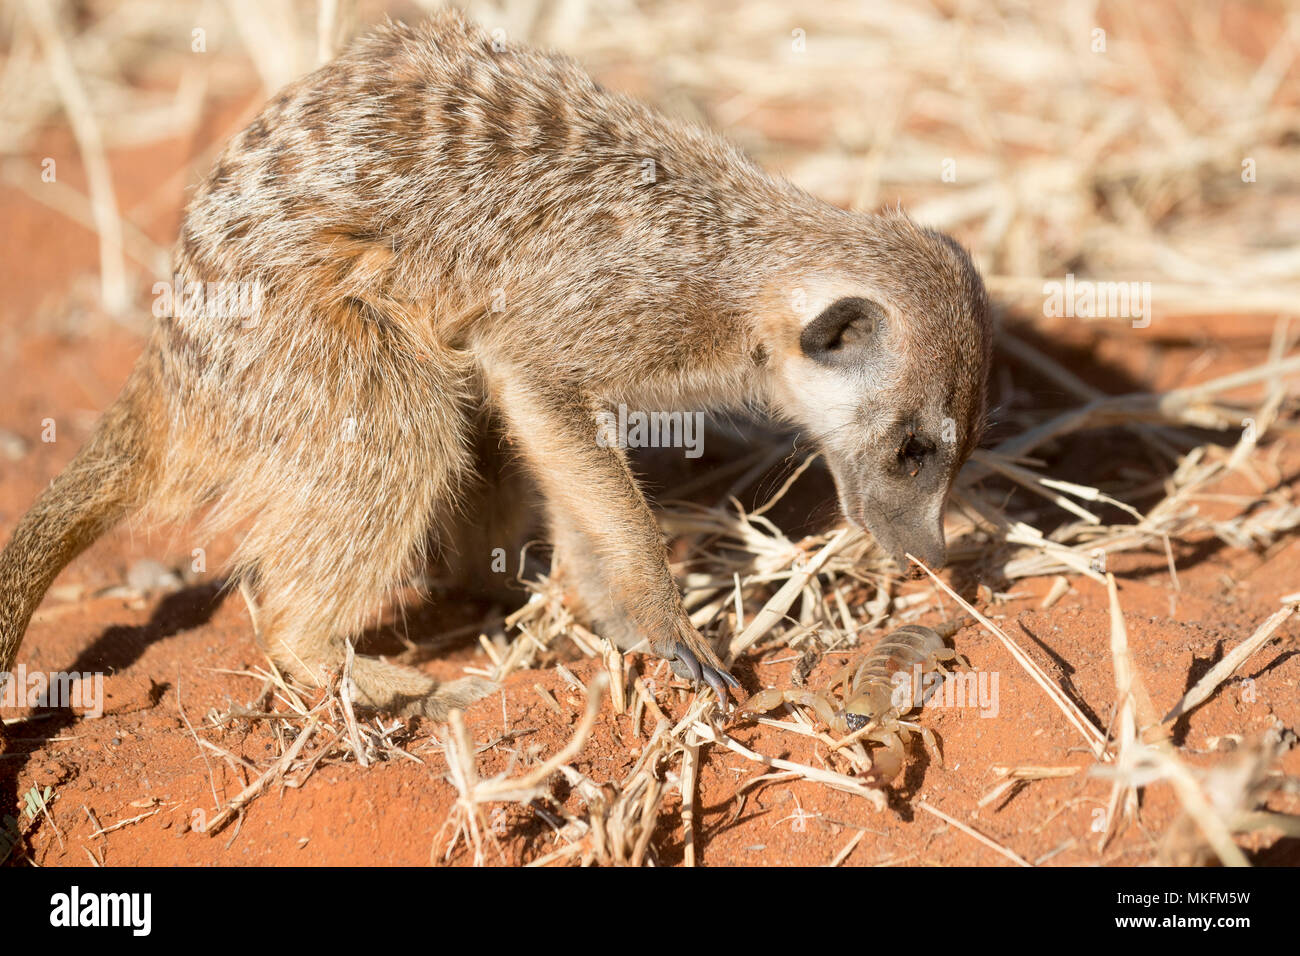 O suricata o suricate (Suricata suricatta), adulto comiendo un escorpión, el desierto de Kalahari, República Sudafricana Foto de stock